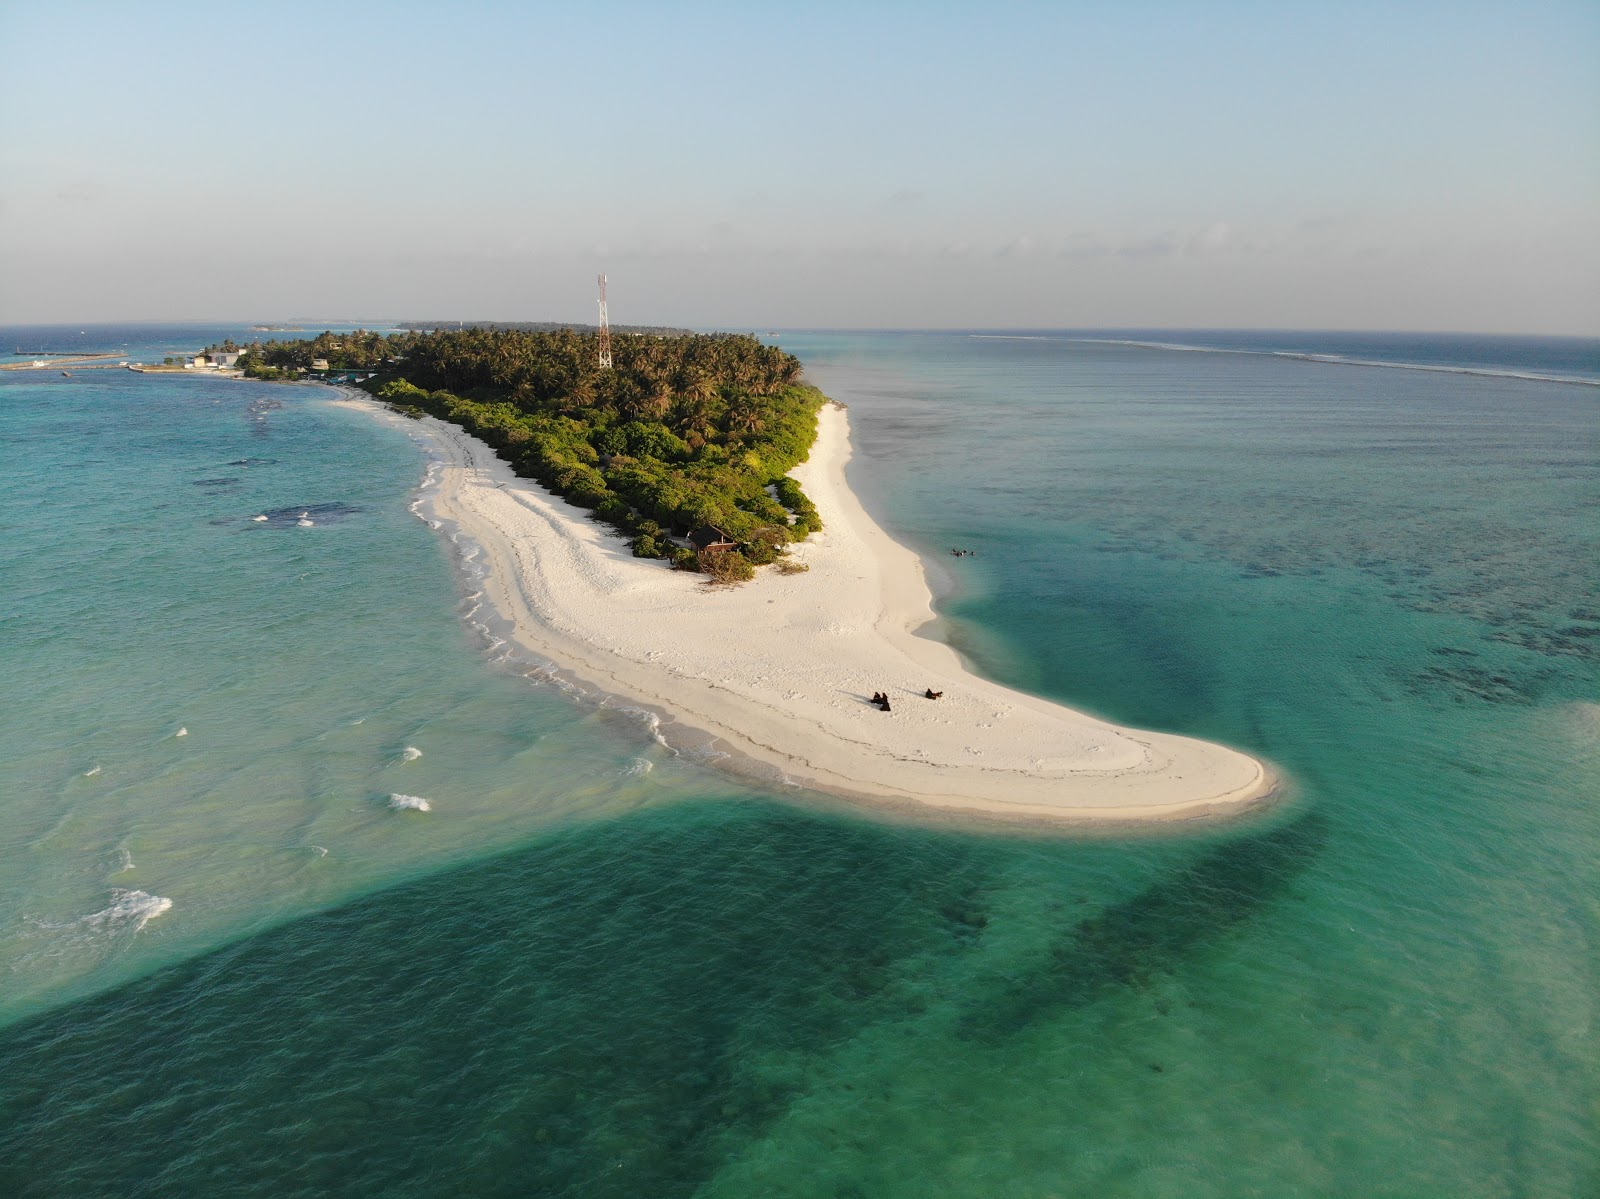 Zdjęcie Fenfushee Island z przestronna plaża